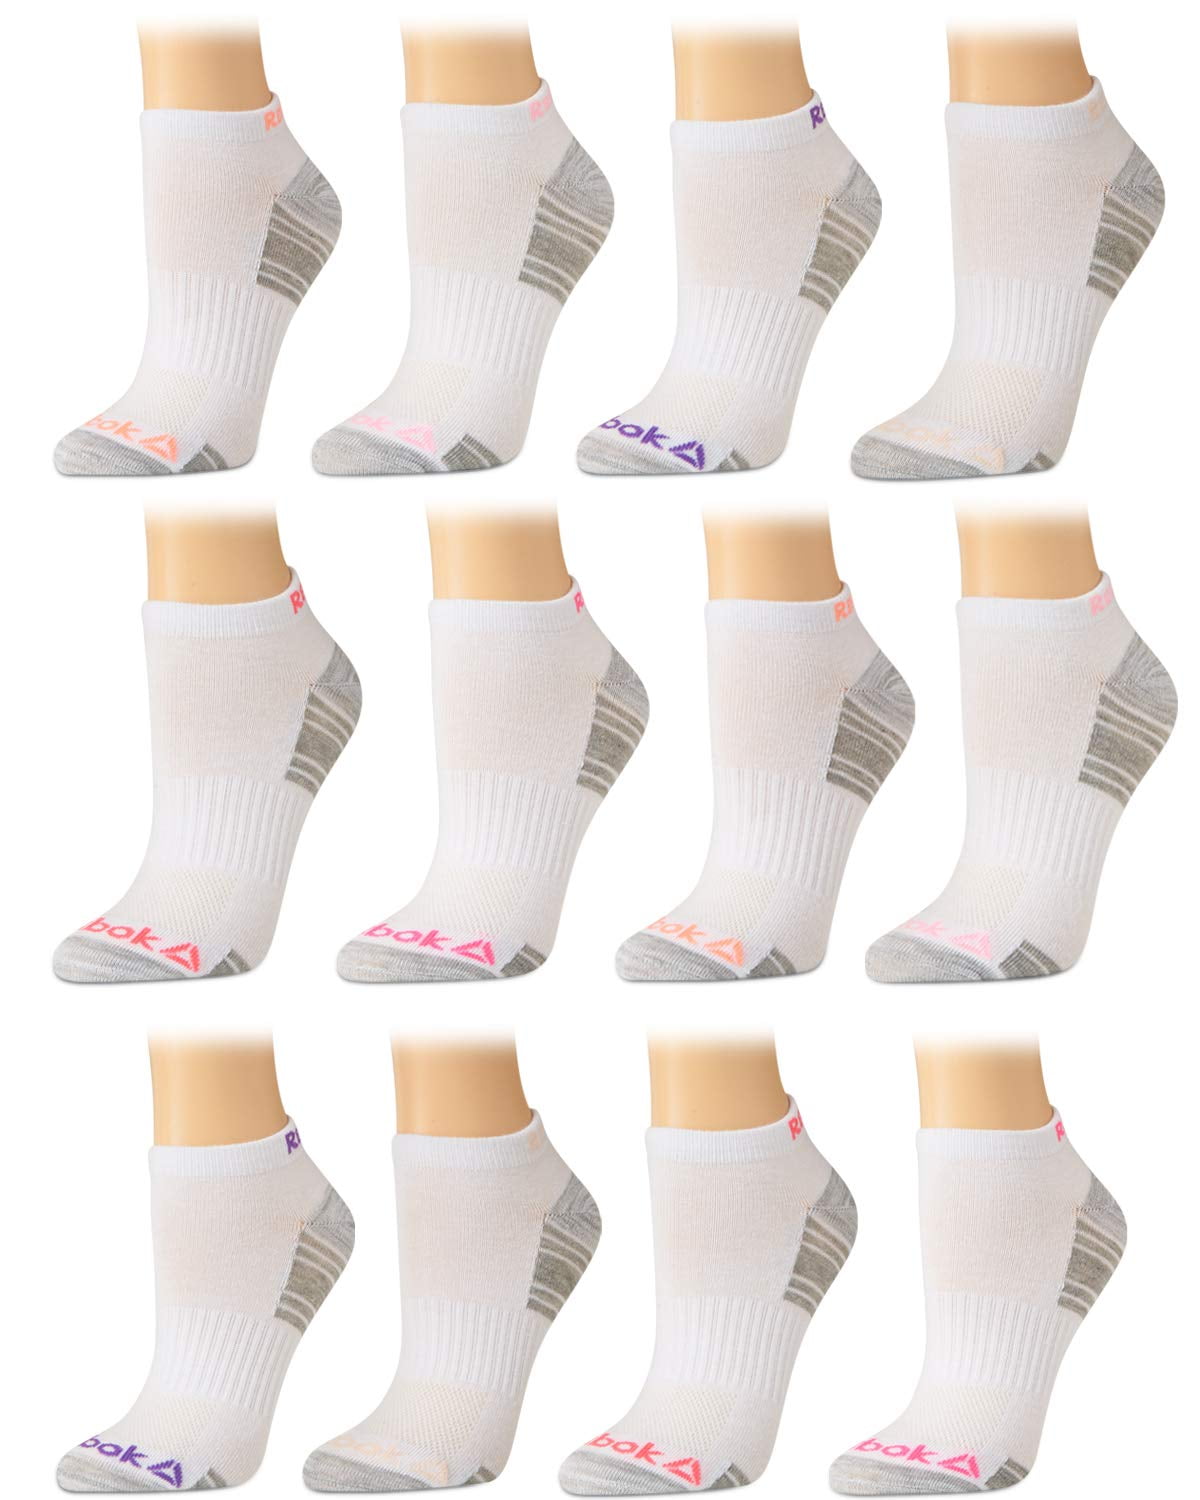 reebok women's athletic socks